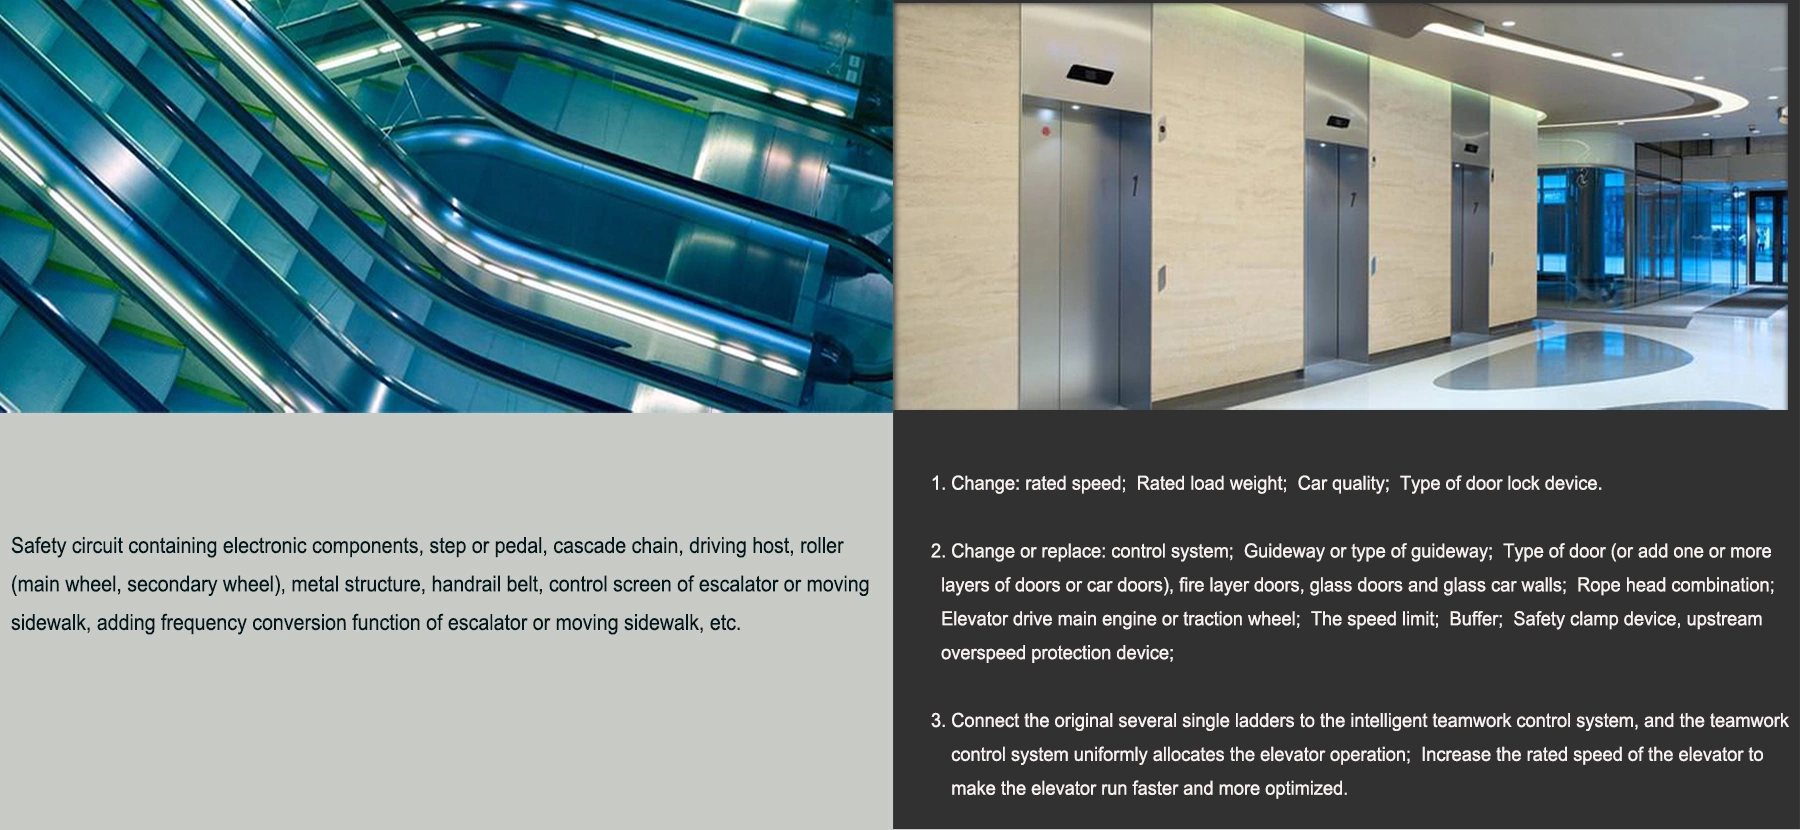 how to do elevator and escalator modernization